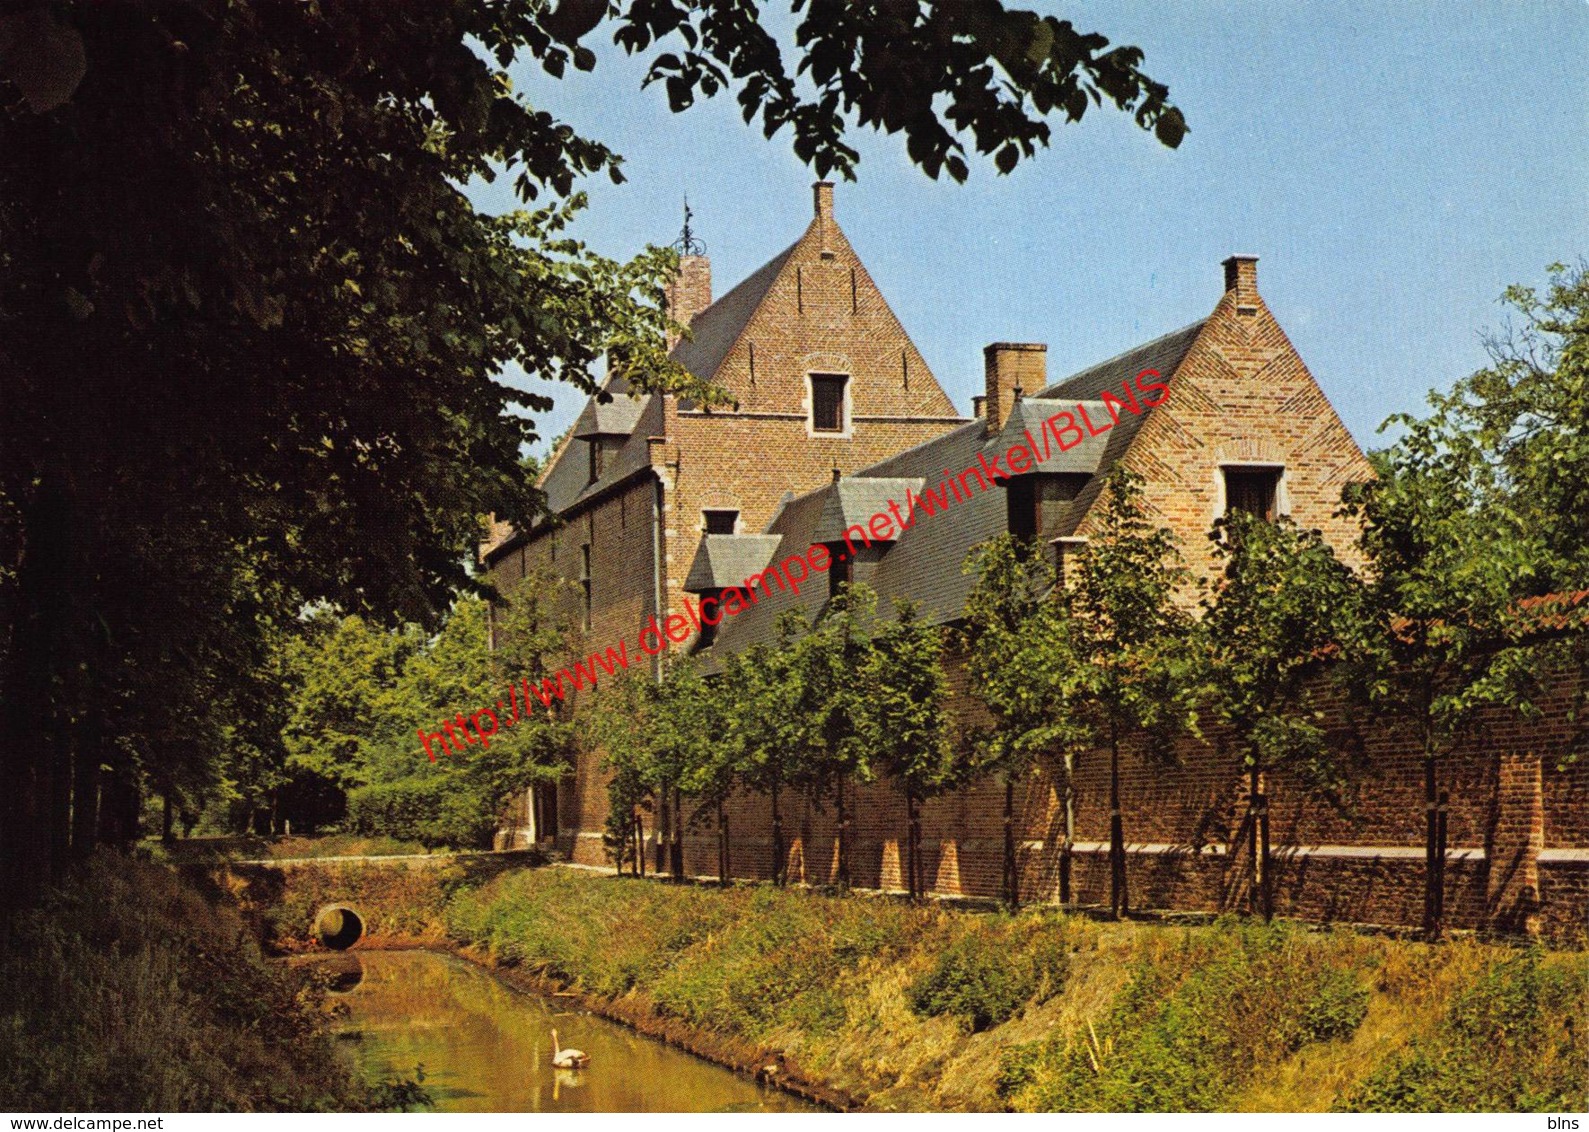 Ronde Intiem Karu Oud-Turnhout - Priorij Corsendonk - vrouwen- en kinderhuis - Oud-Turnhout